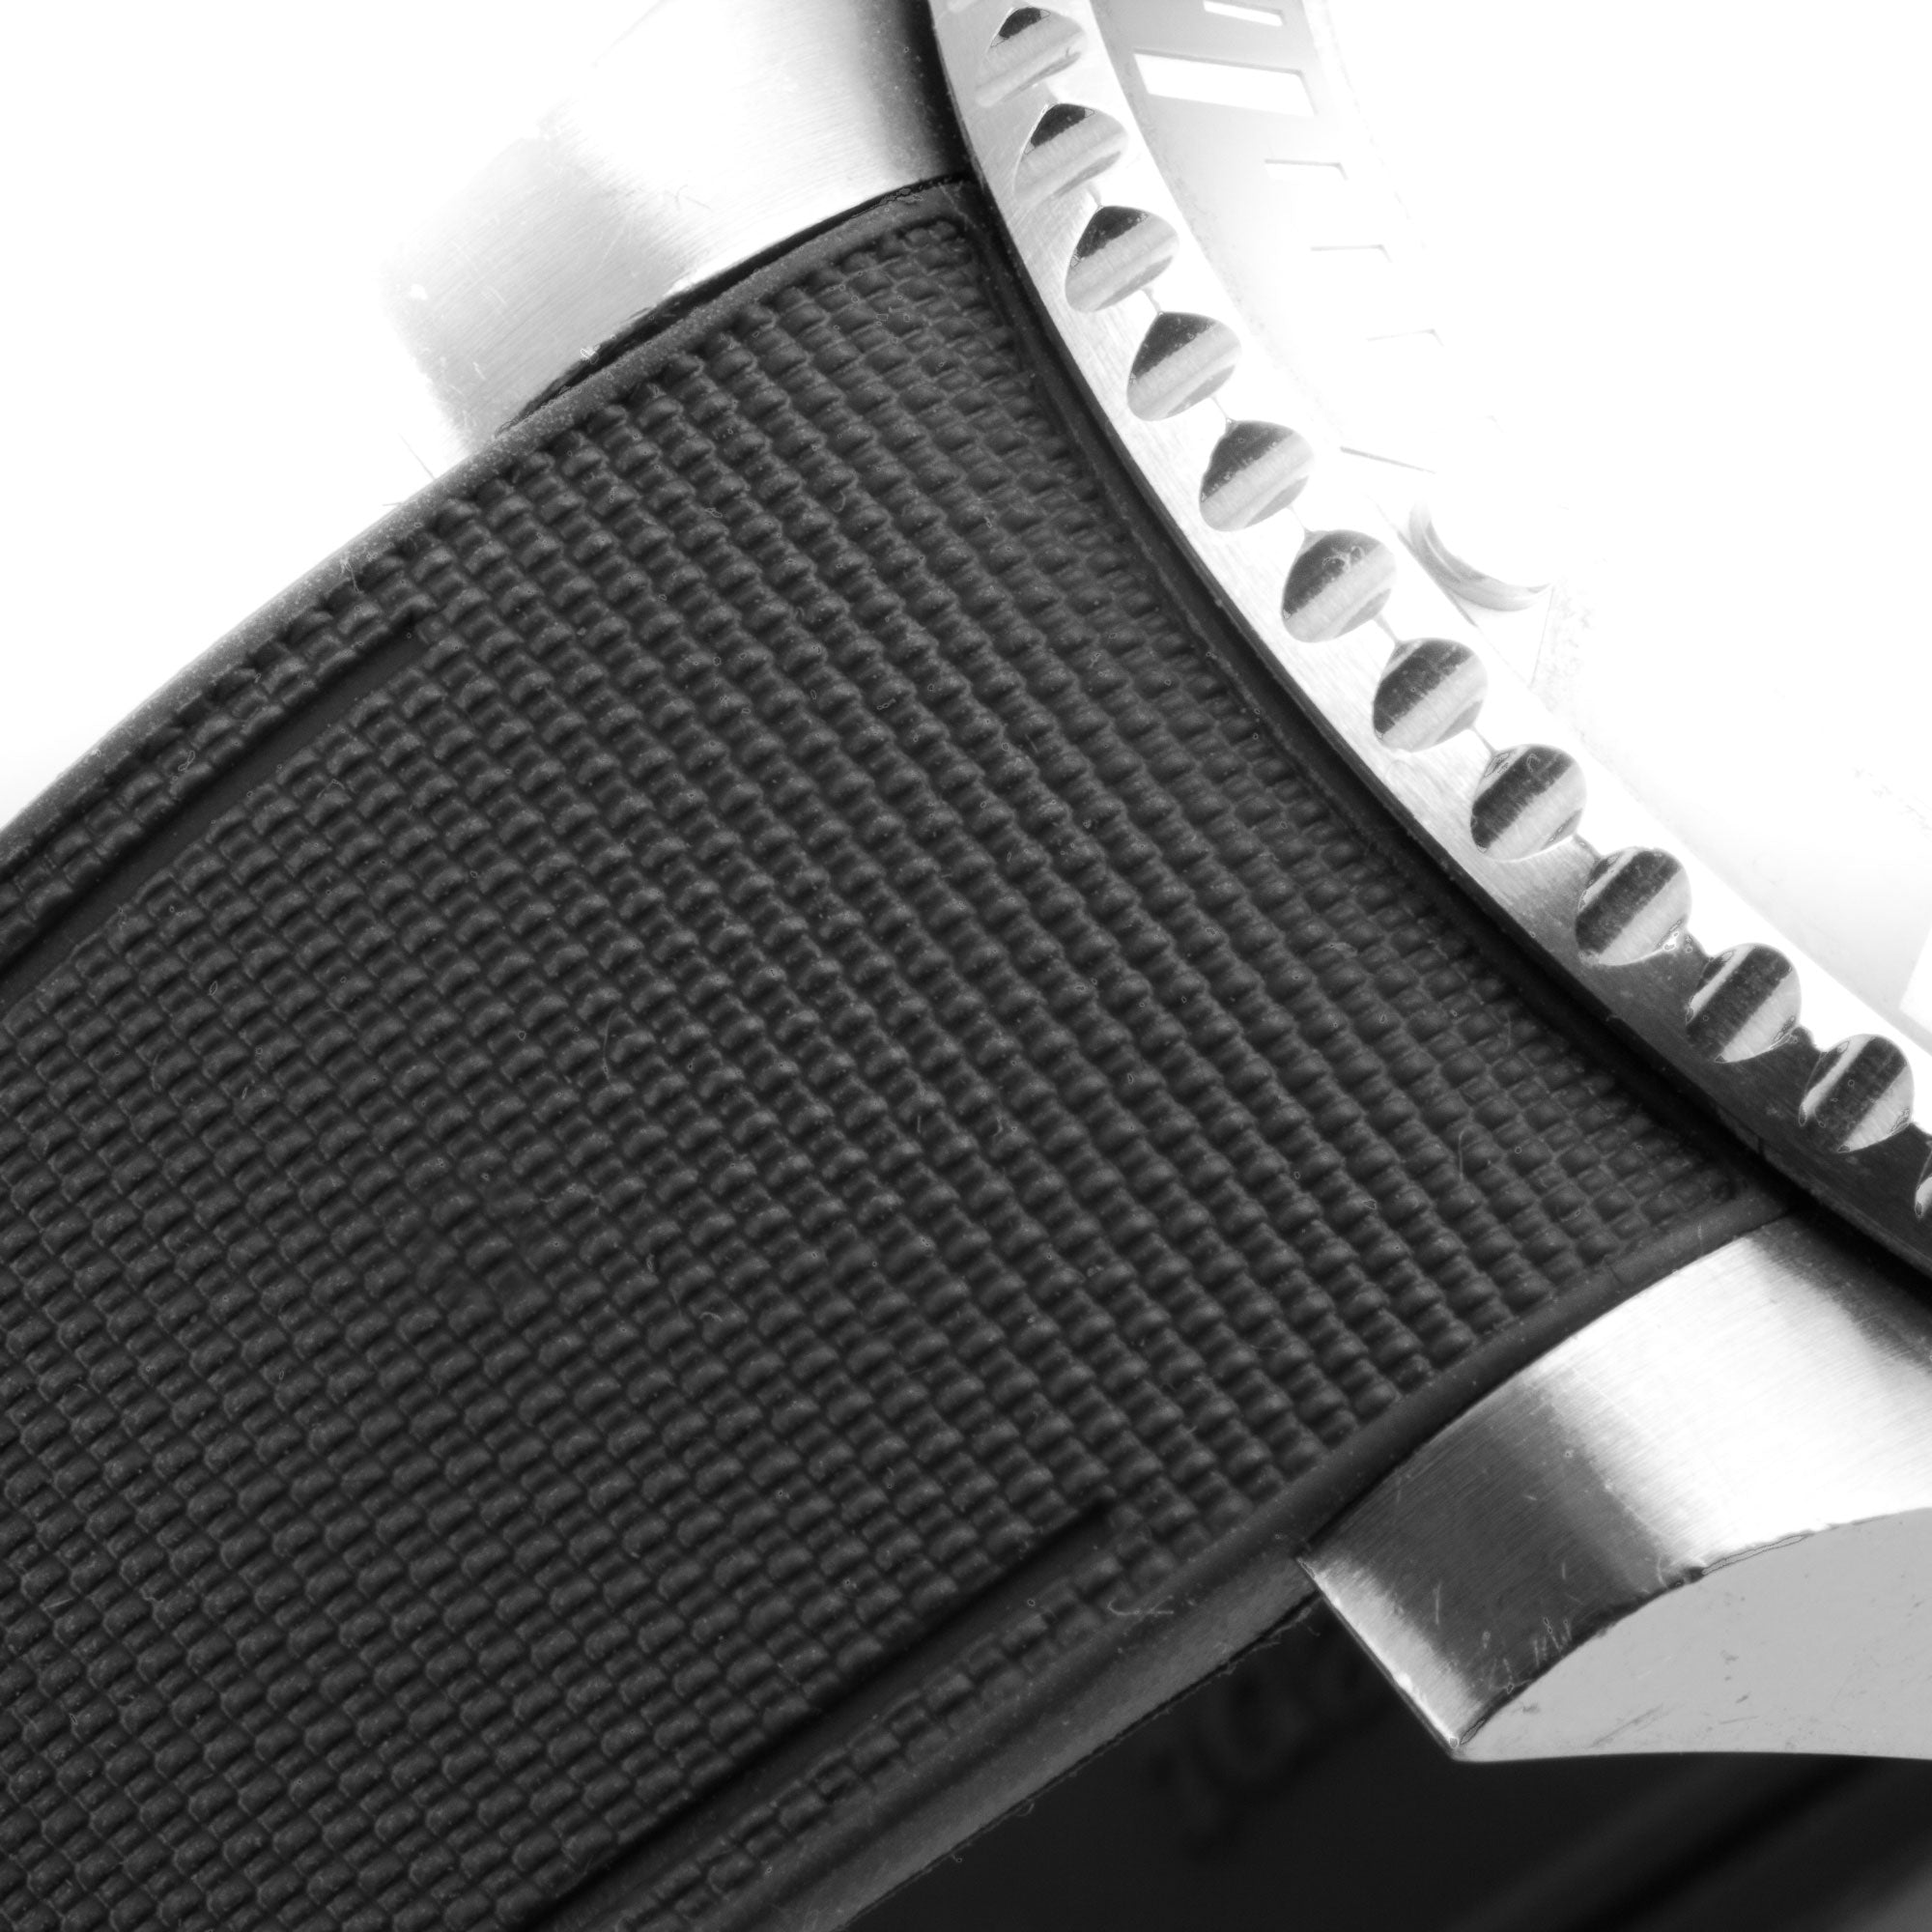 Rolex – R strap Premium - Bracelet-montre caoutchouc motif cordura pour GMT Master II non-céramique & bracelet Oyster